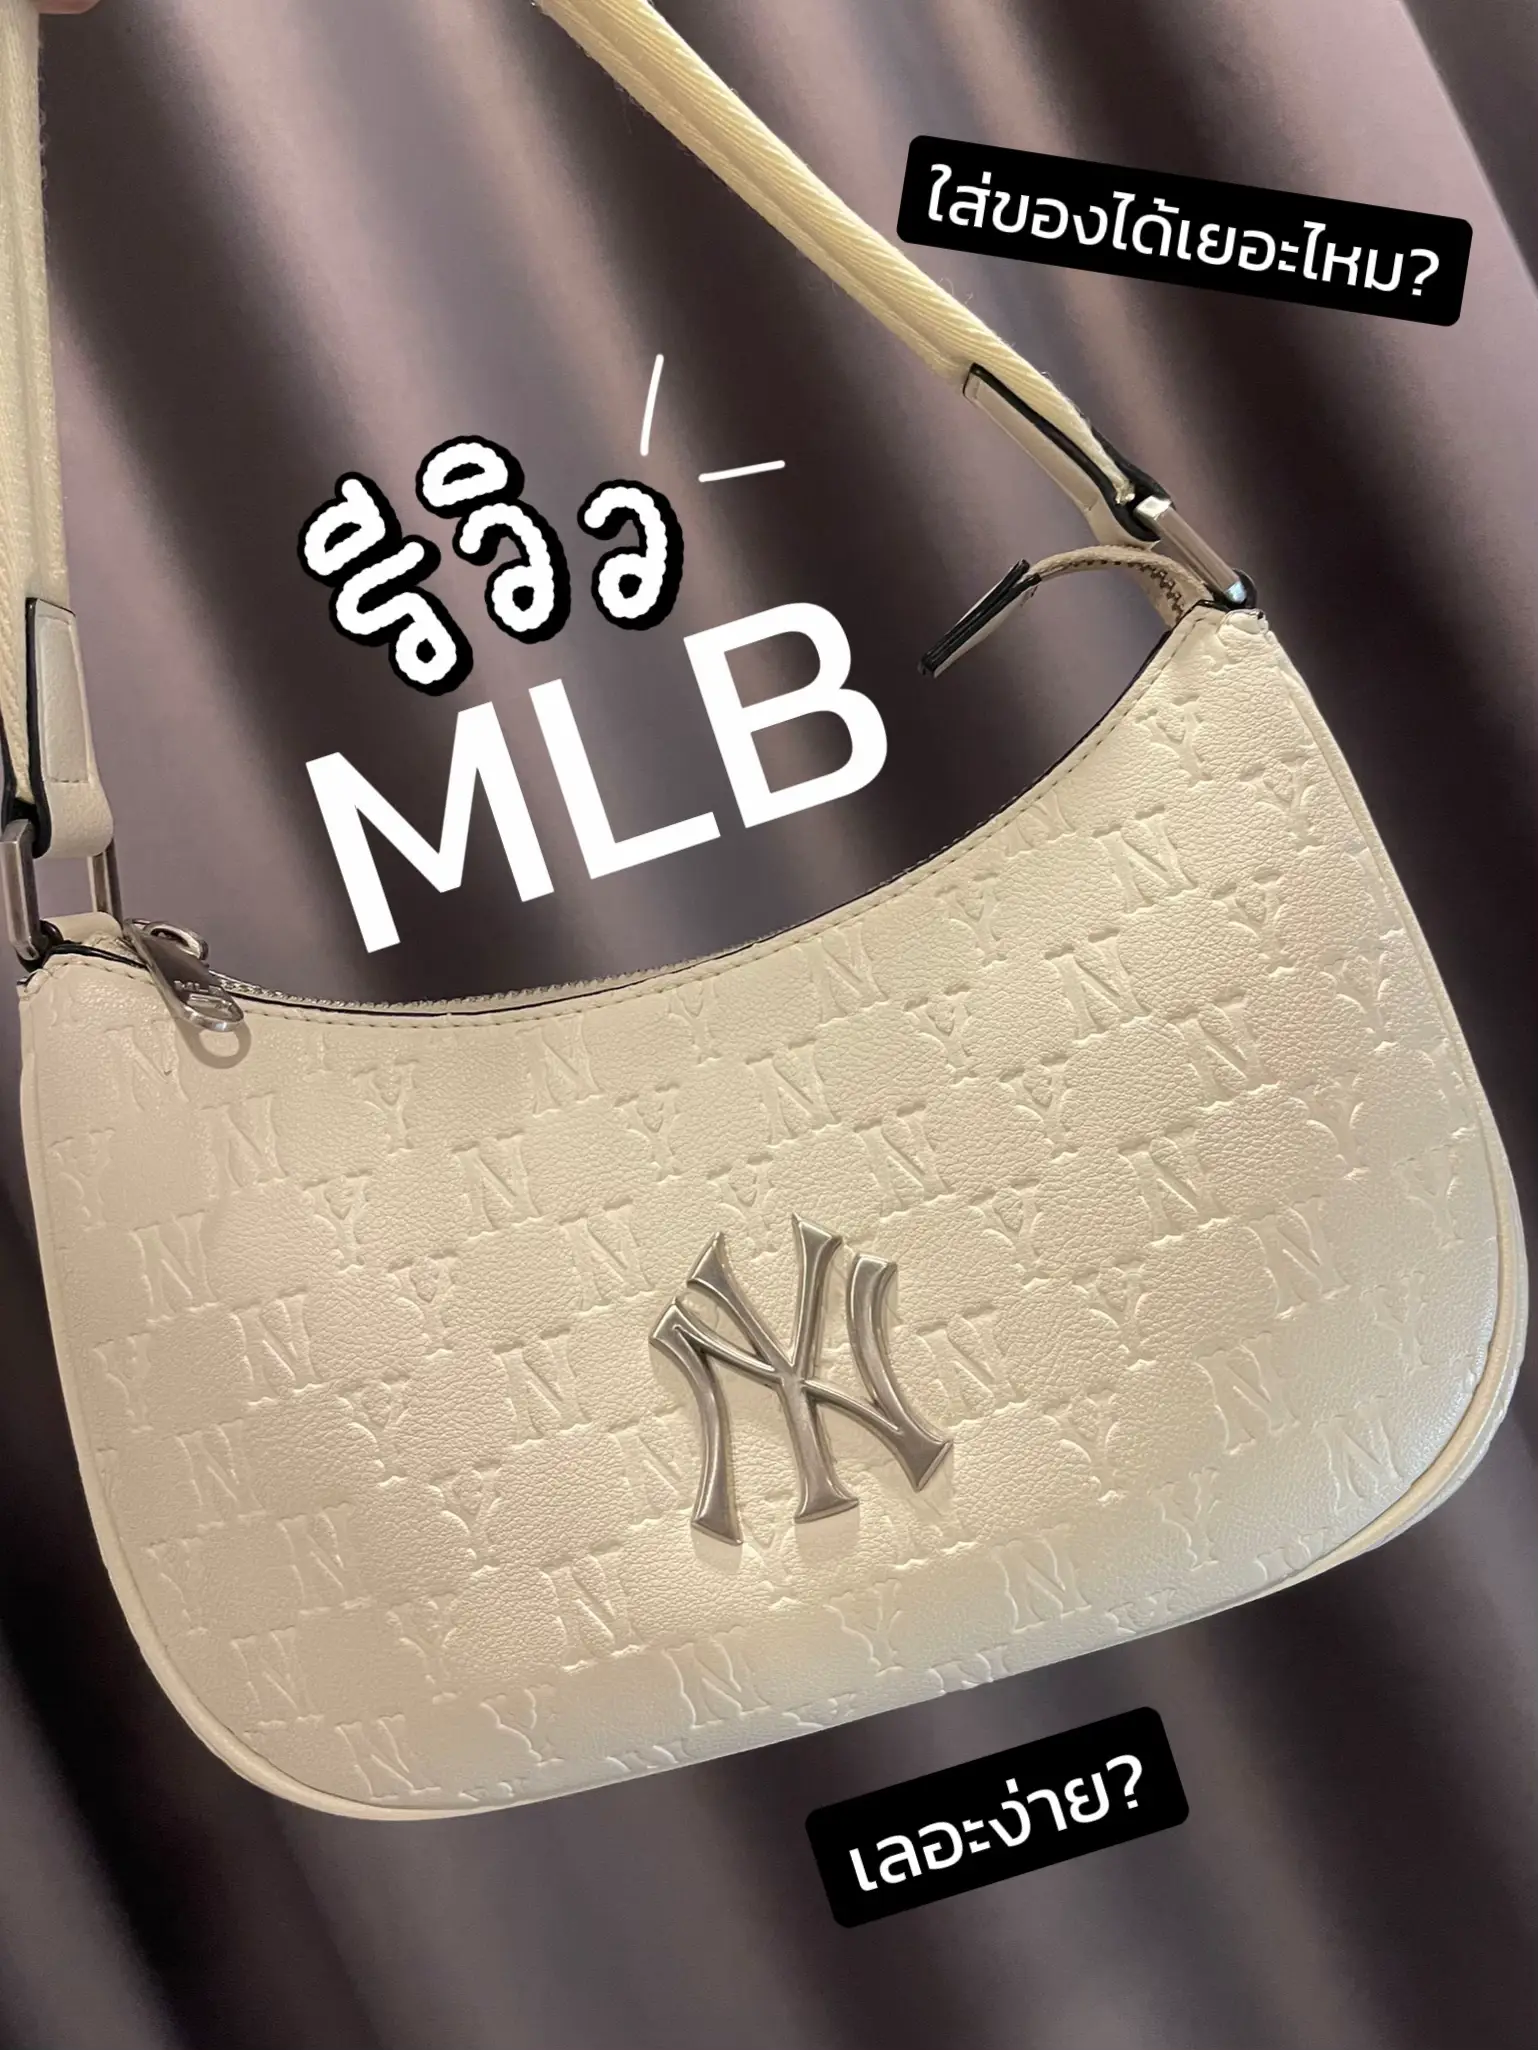 MLB Unisex Double Slide Jacquard Dia Monogram NY Yankees Black